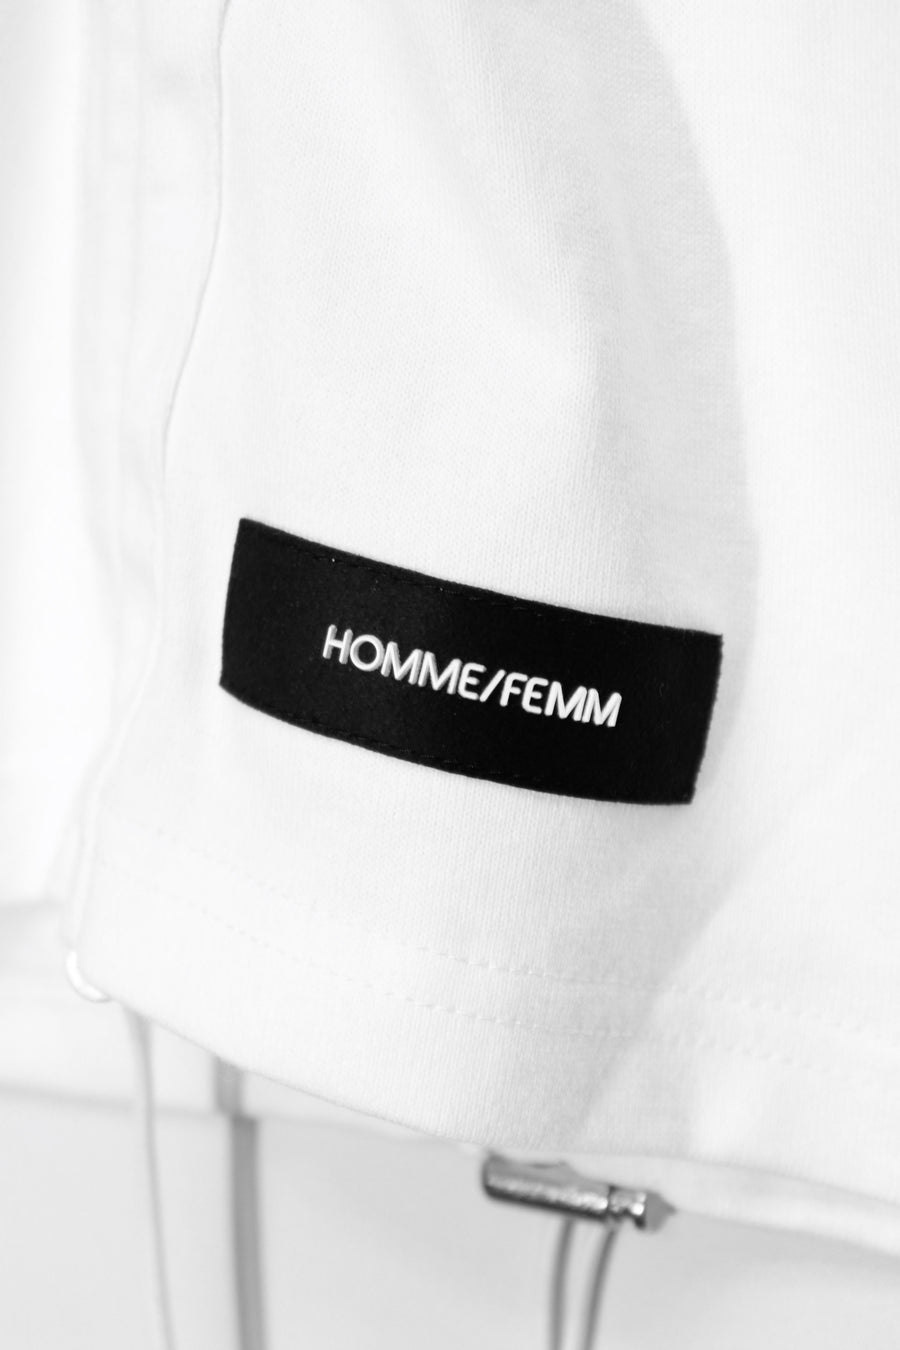 SYU.HOMME/FEMM  Shrink tank sleeves(WHITE)